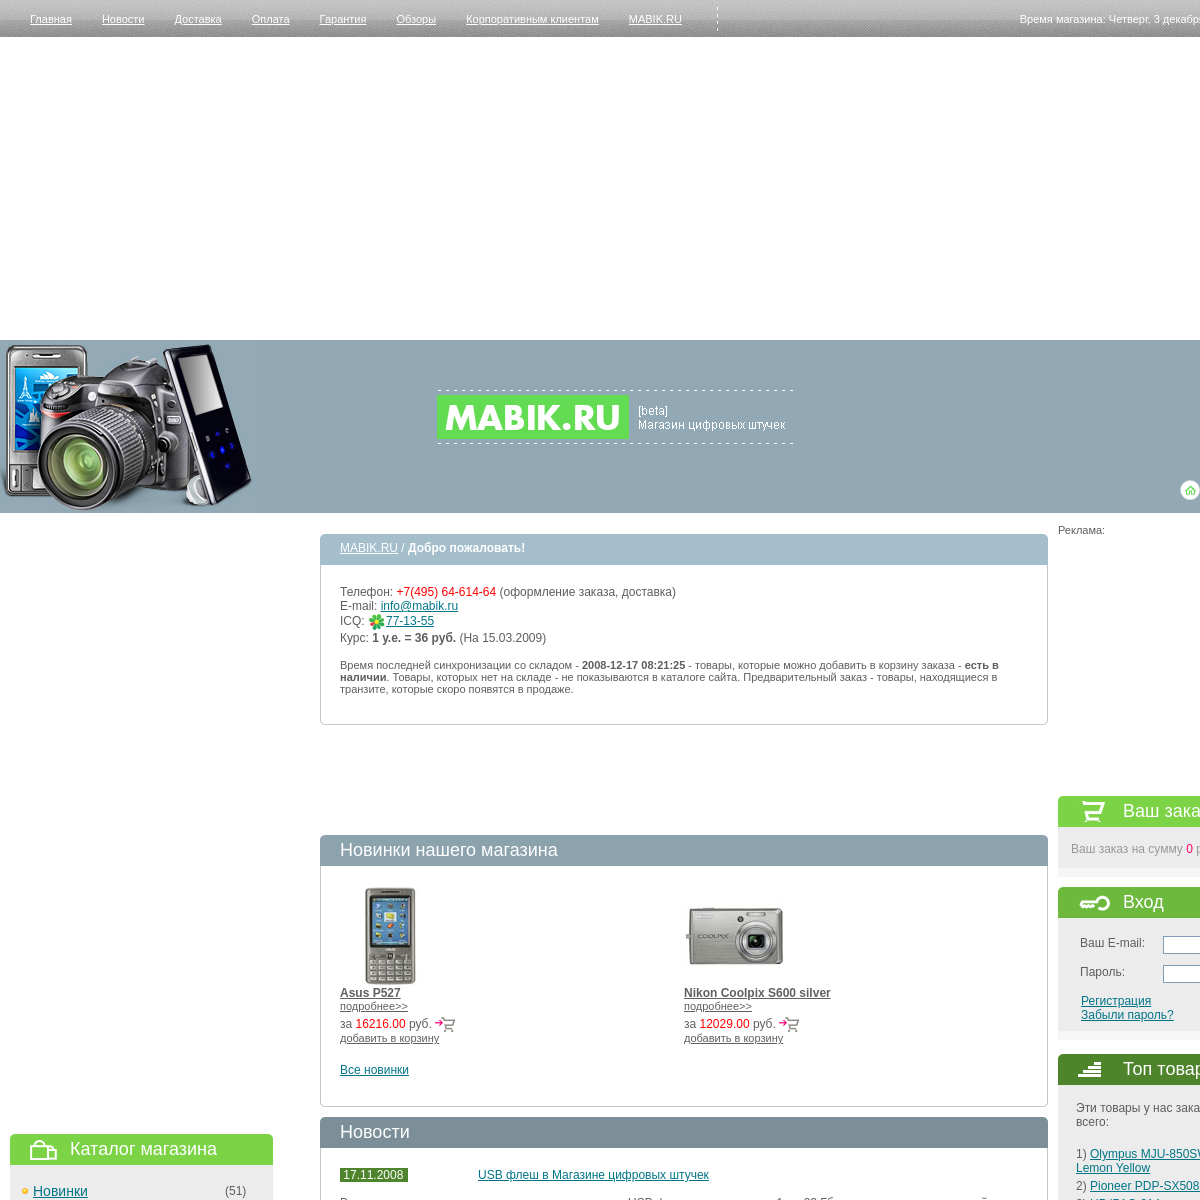 A complete backup of mabik.ru